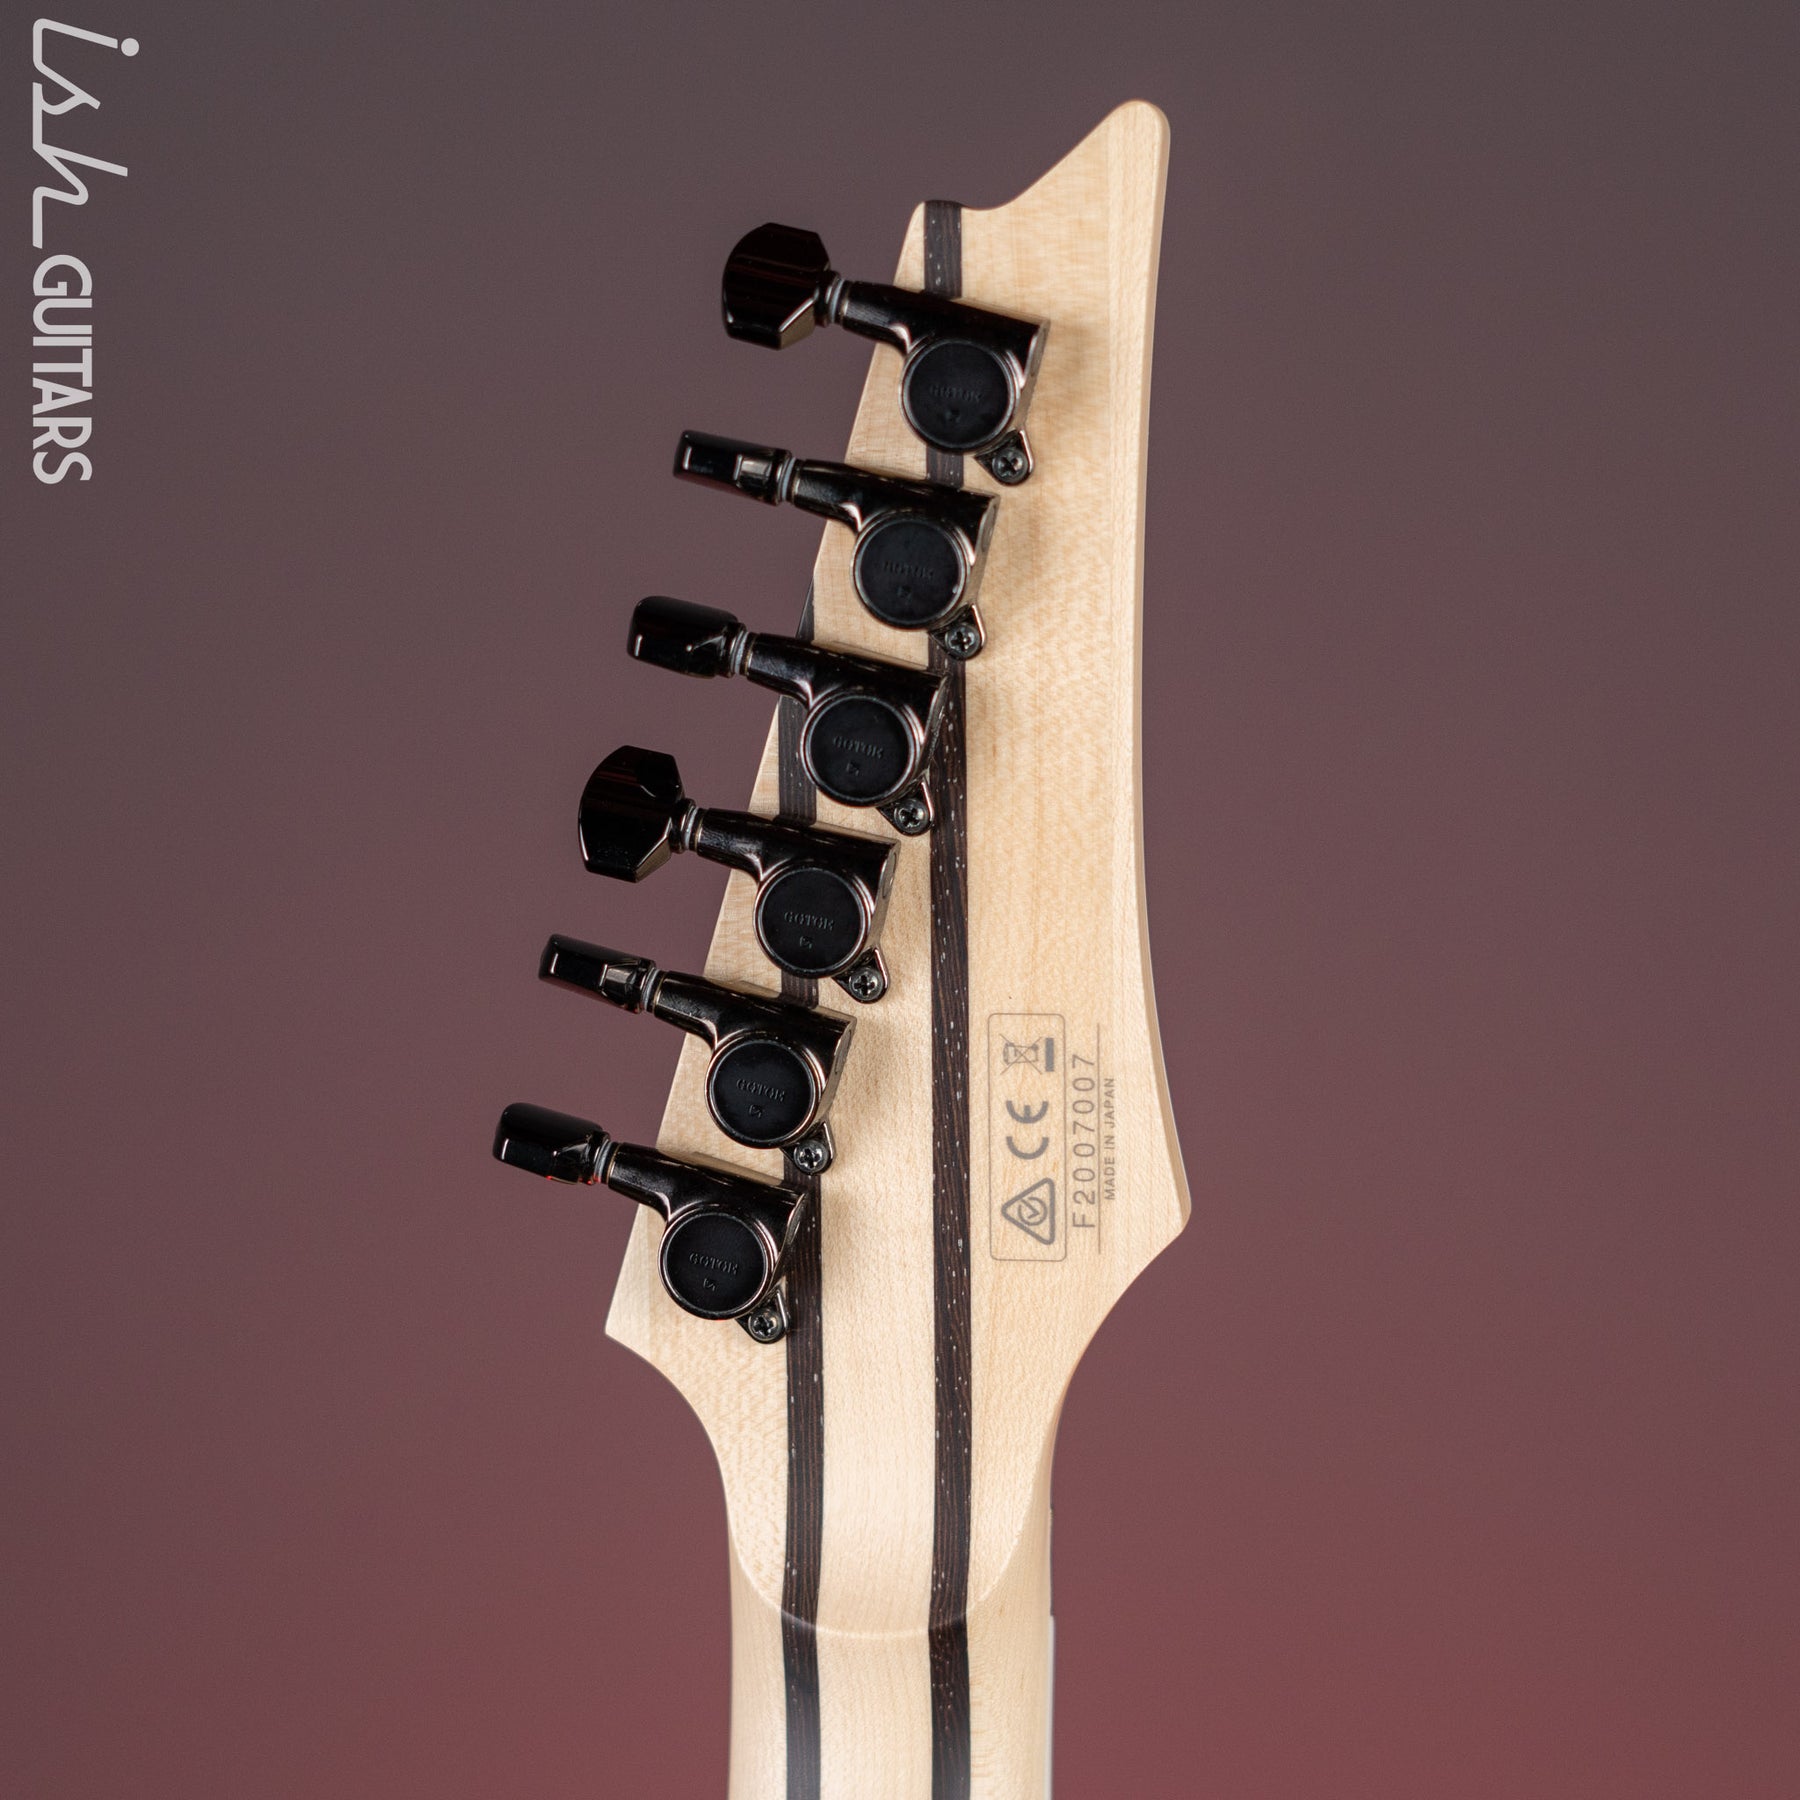 IBANEZ - RG5320L COS SHAODW - Guitare électrique gaucher 6 cordes